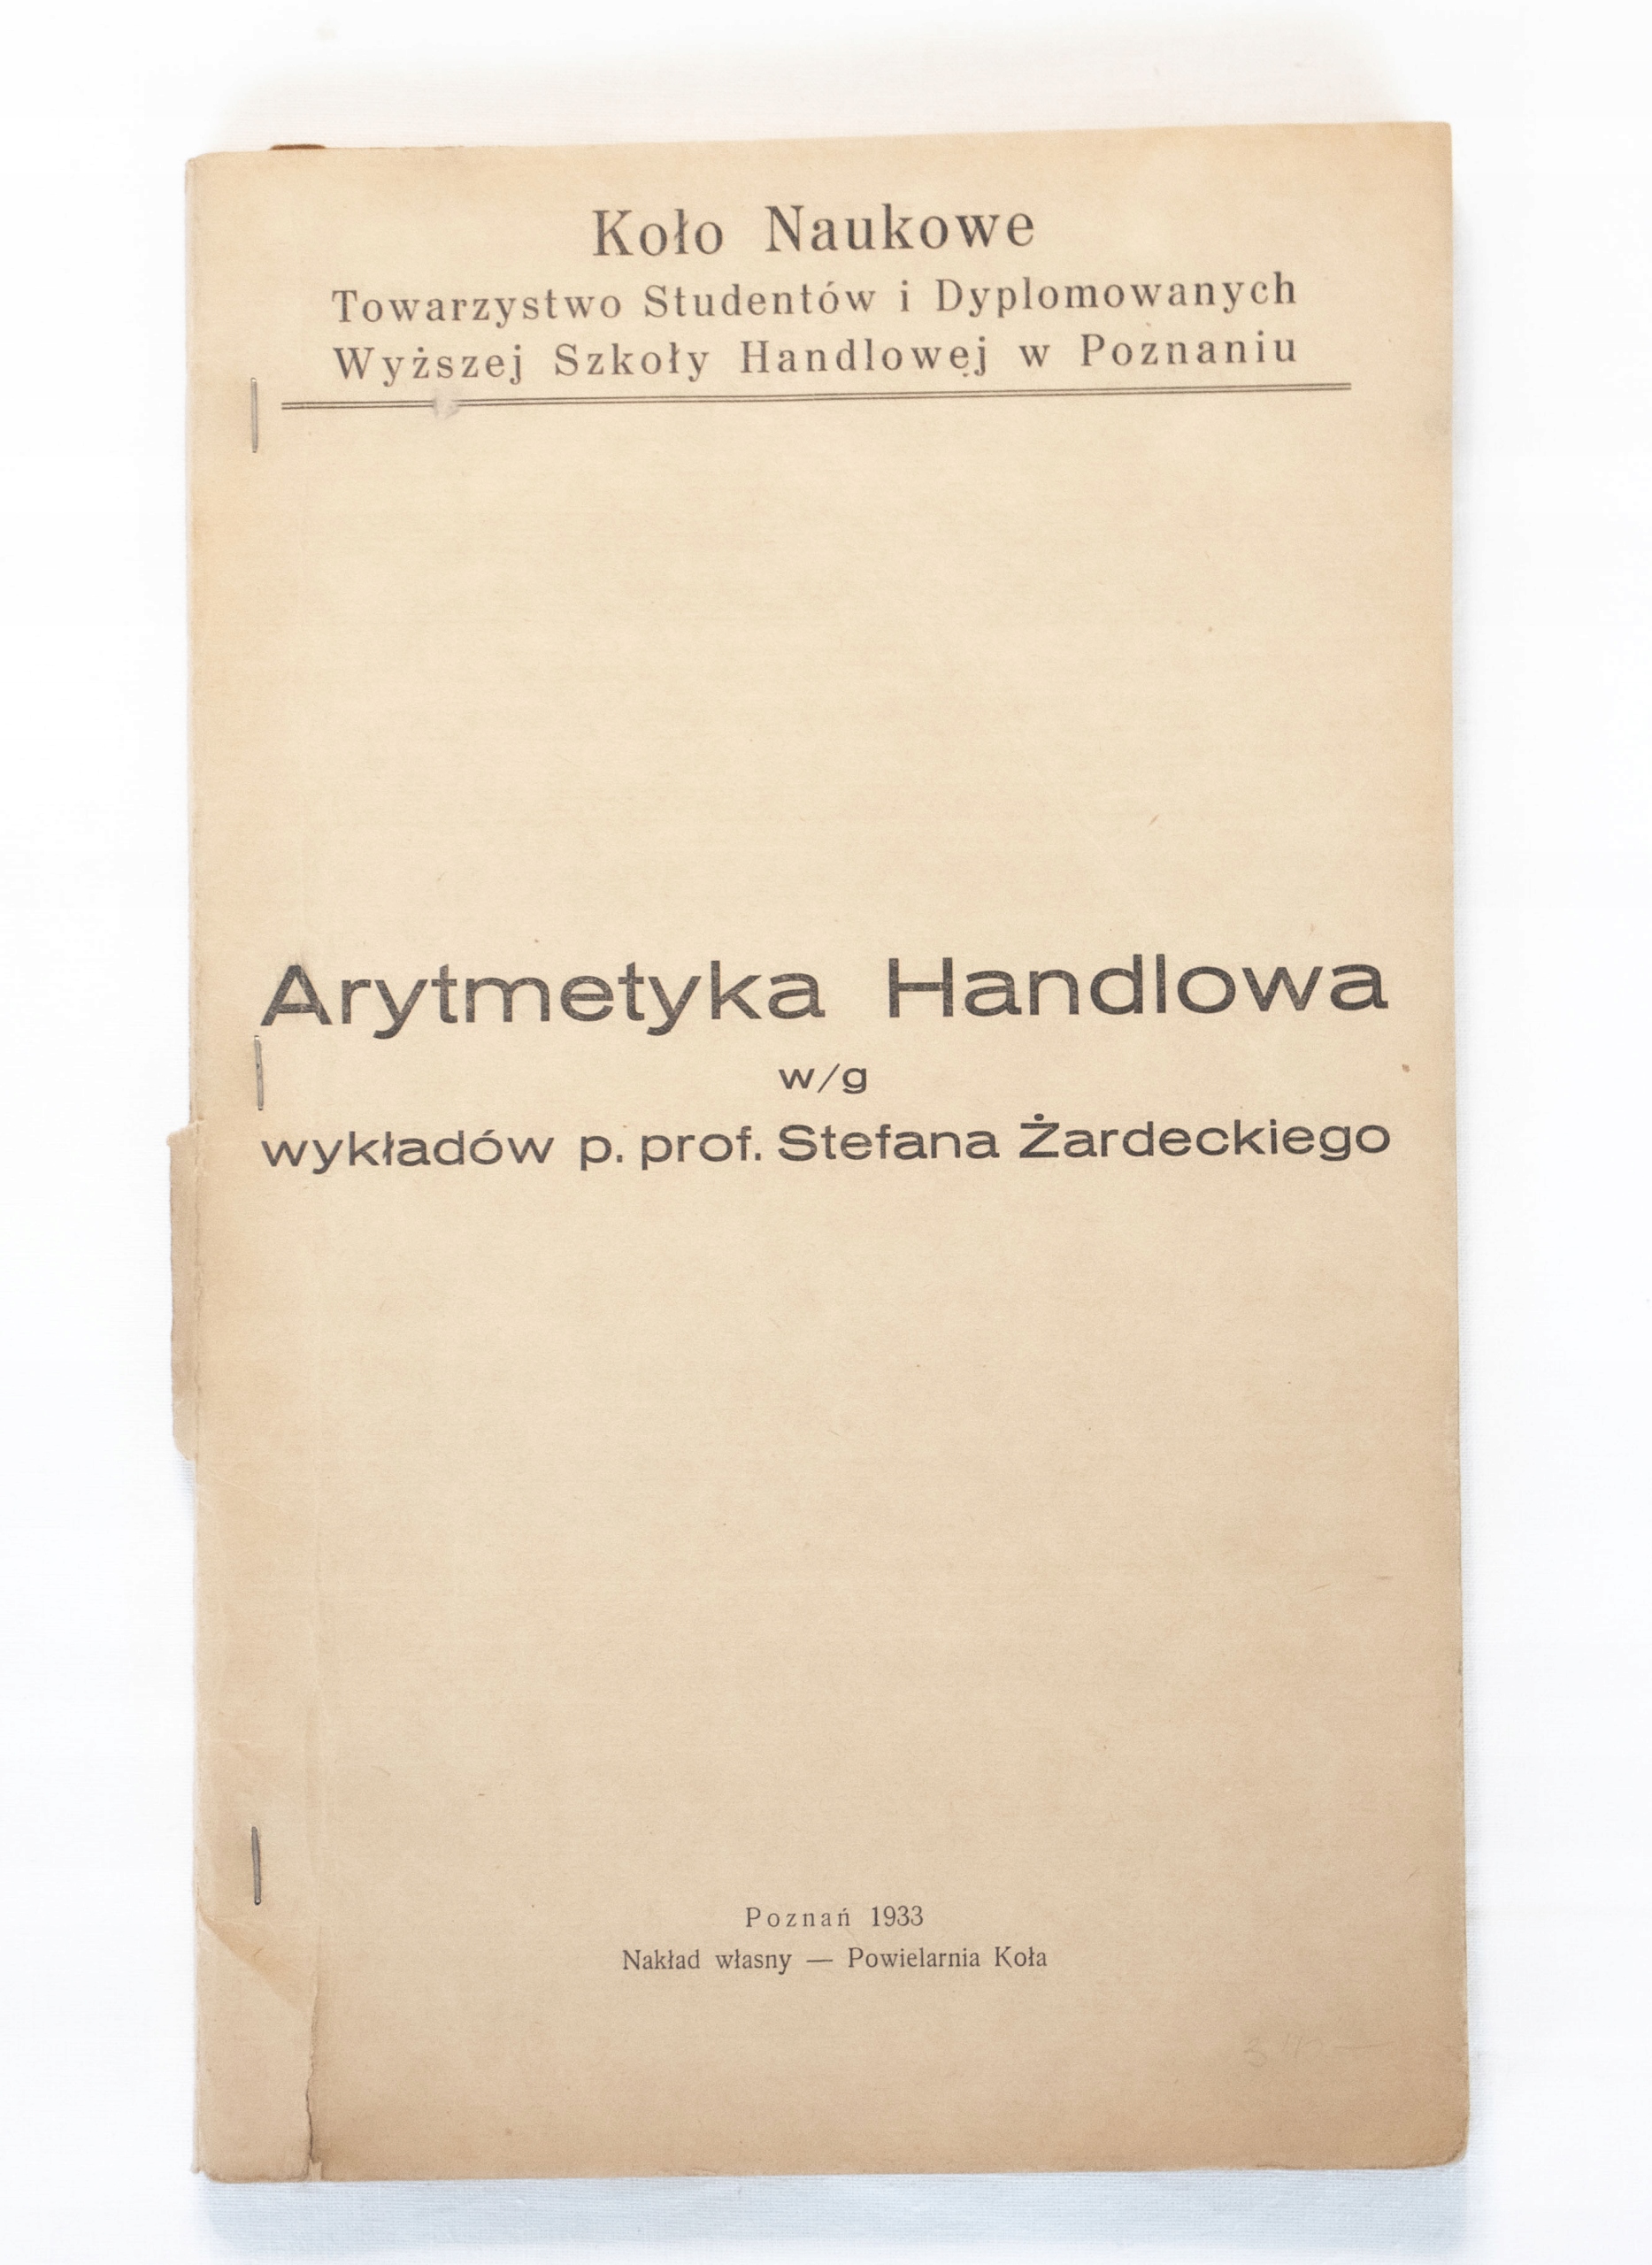 STARA KSIĄŻKA ARYTMETYKA HANDLOWA, POZNAŃ 1933